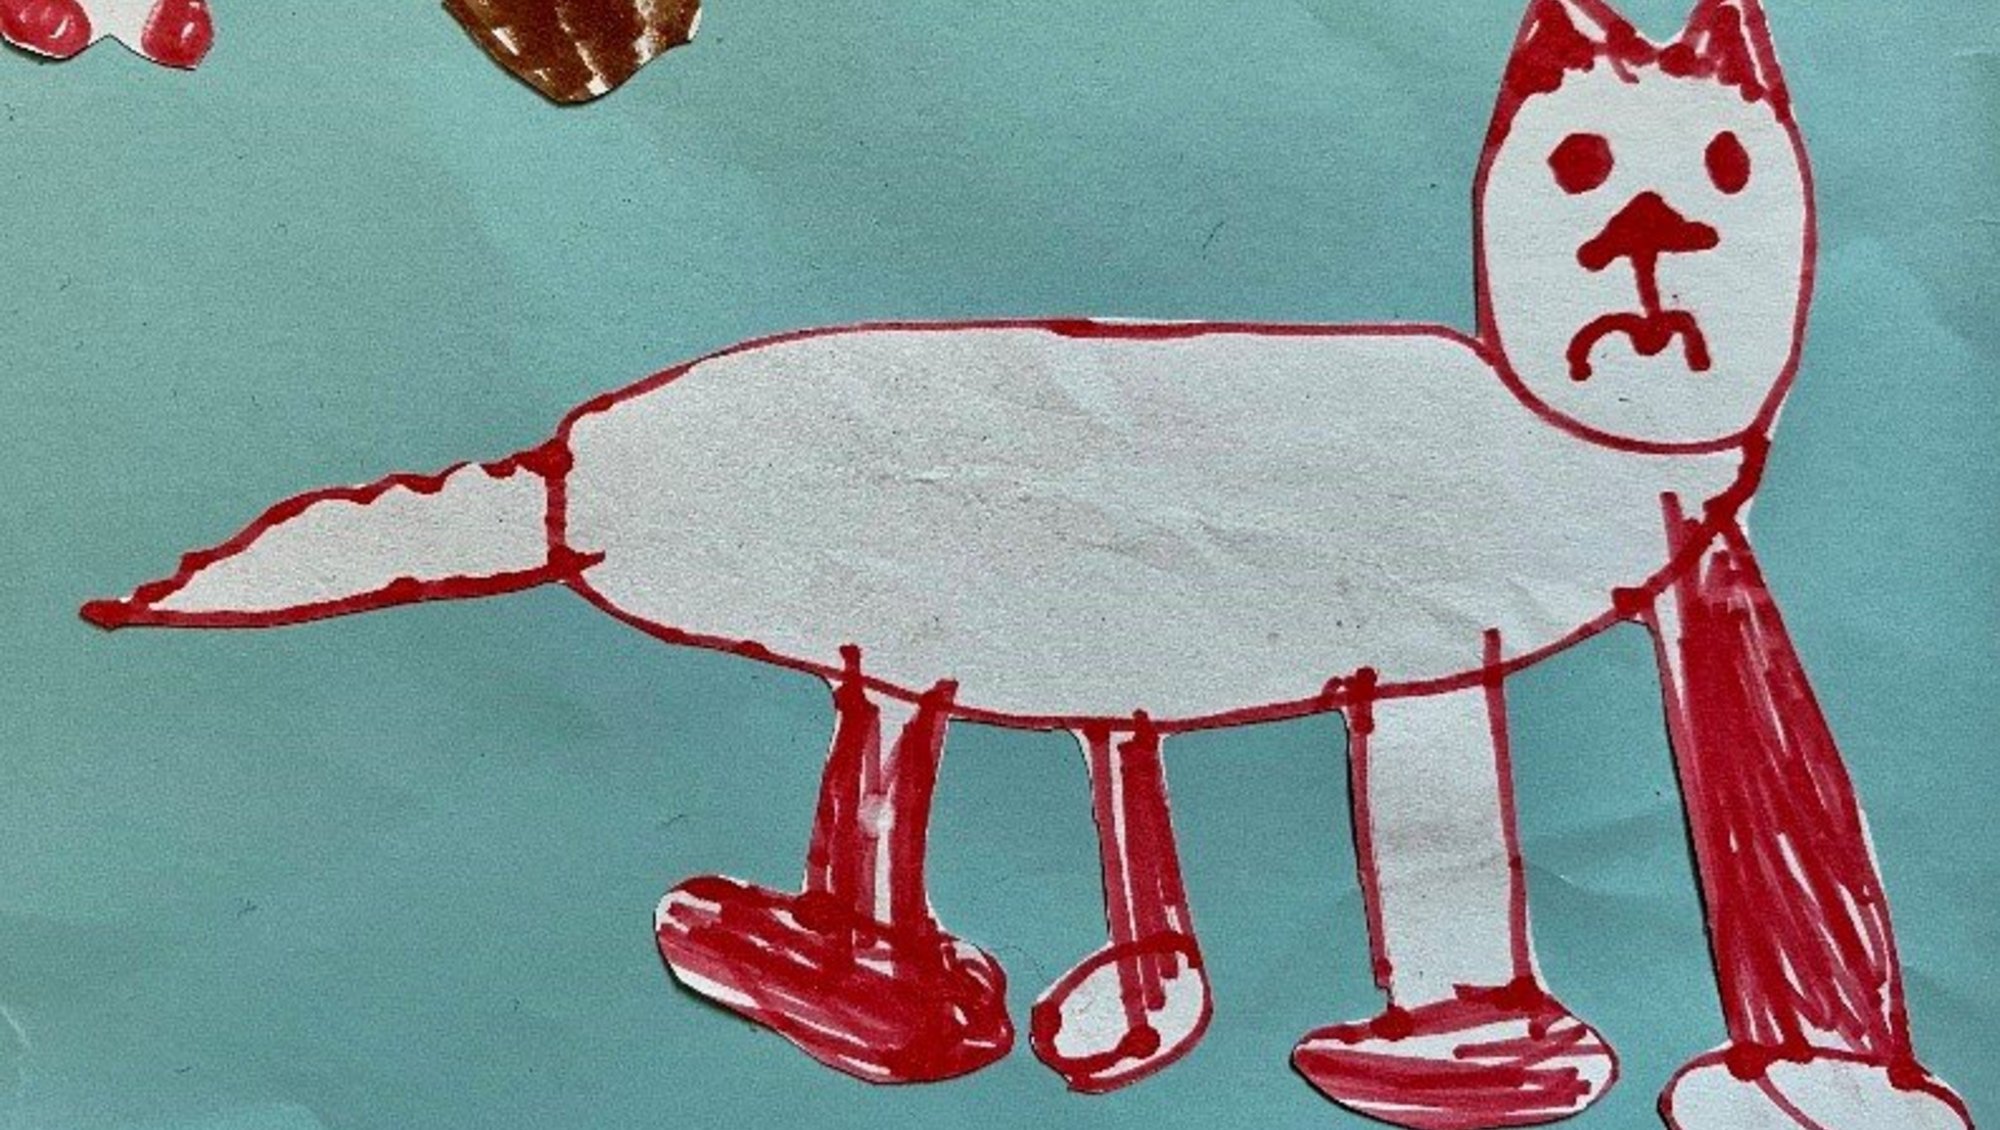 Børnetegning af kat med fire ben (Tegning: Iben Bjerre)